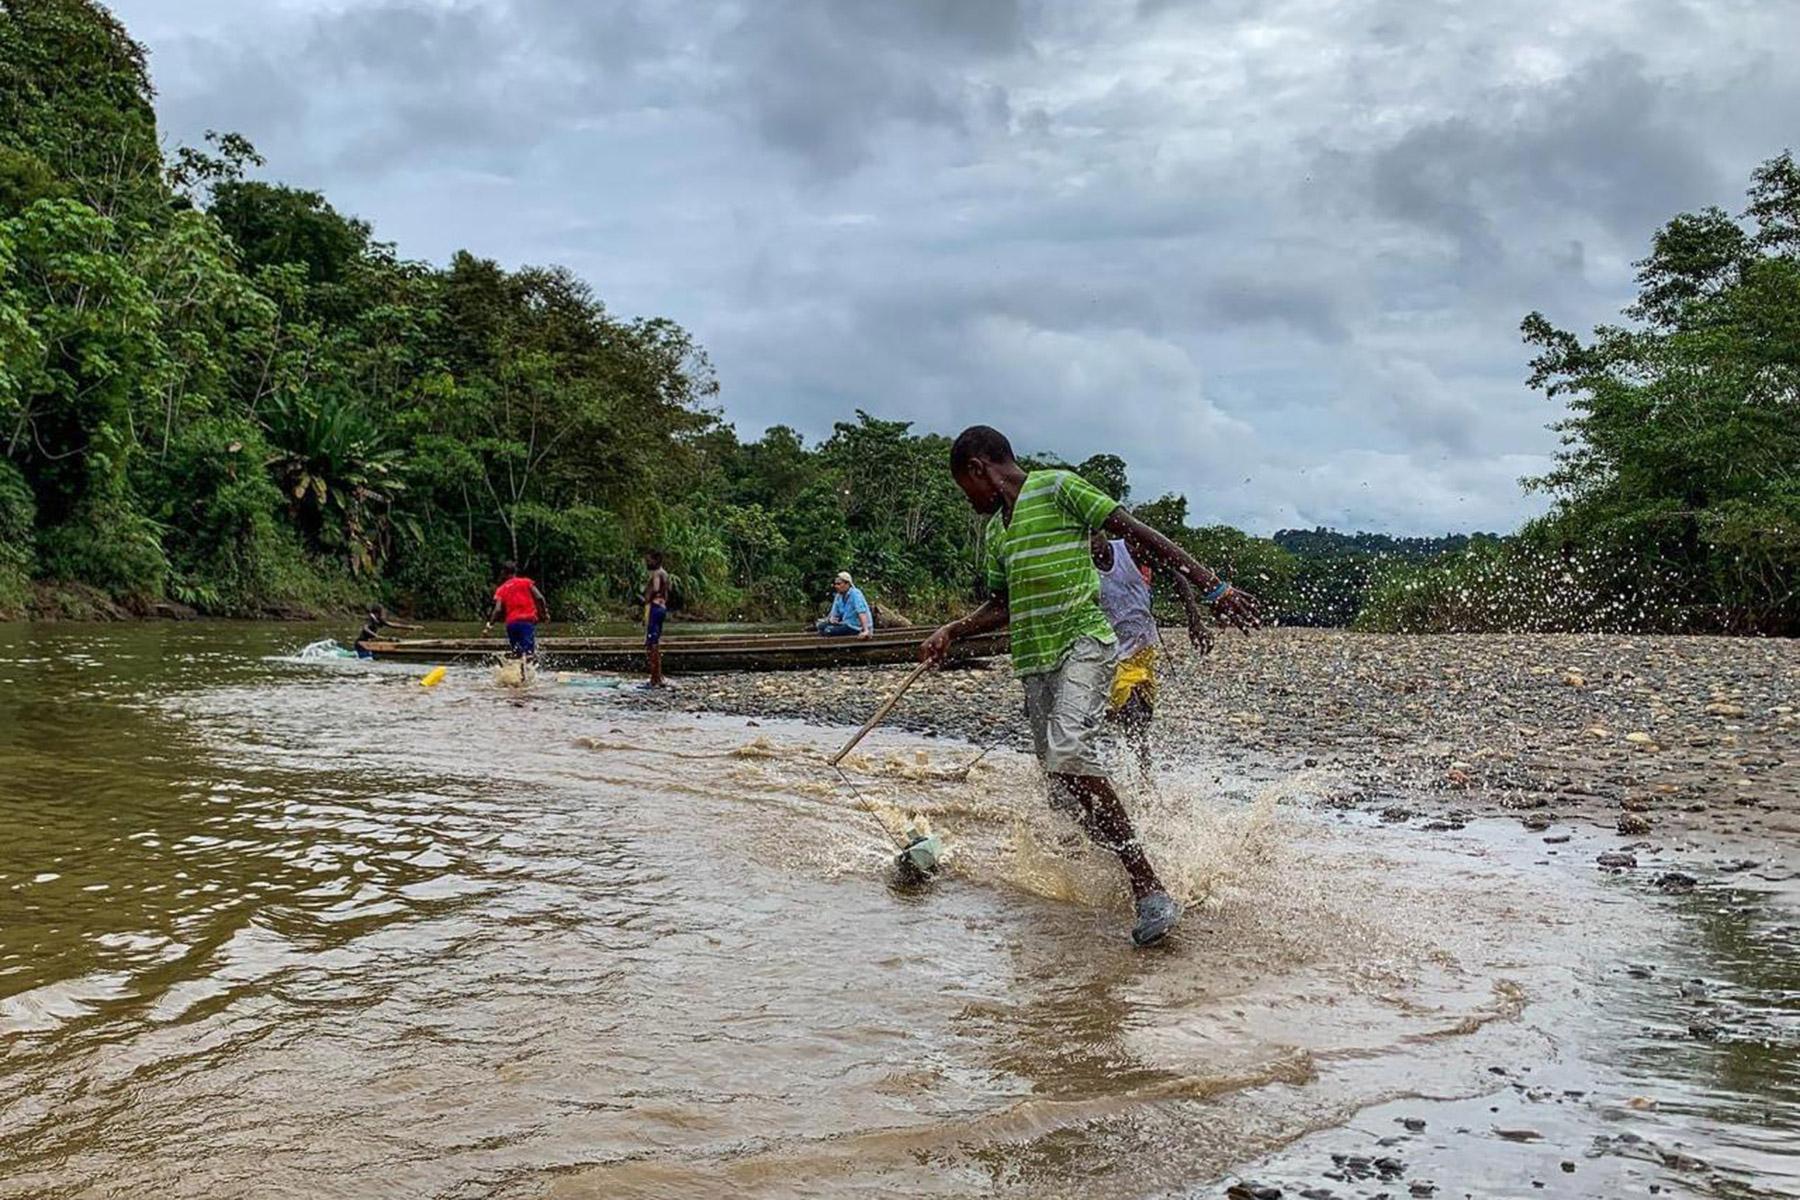 Jugendliche spielen am Ufer des Río Pogue in Atrato, im Nordwesten Kolumbiens. Der LWB unterstützt lokale Gemeinden bei der Wahrung ihrer Rechte und dem Schutz des Atrato-Flusses, der seit Jahrzehnten durch Schürf- und Minenaktivitäten verschmutzt wird. Foto: LWB/G. A. Moreno Clavijo